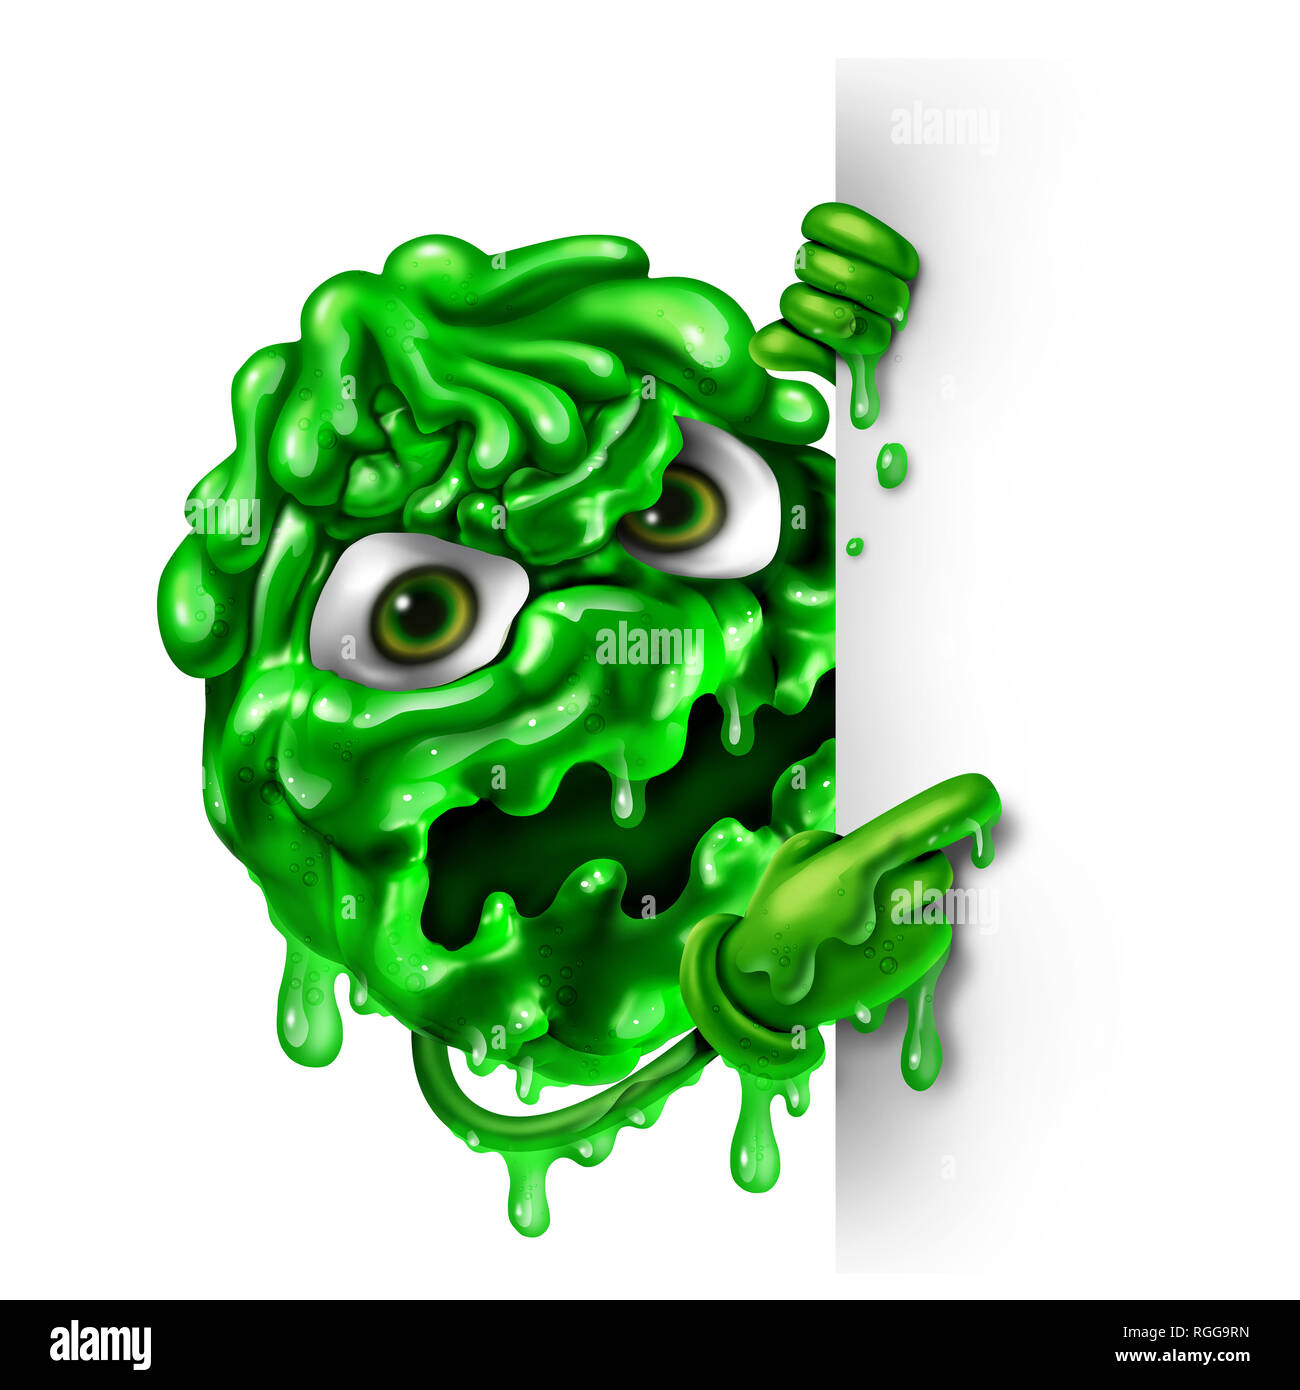 Caractère de mucus comme un concept vert télécharger que l'écoulement nasal en forme liquide comme une maladie contagieuse monster avec un signe vierge comme une maladie médicale symbole. Banque D'Images